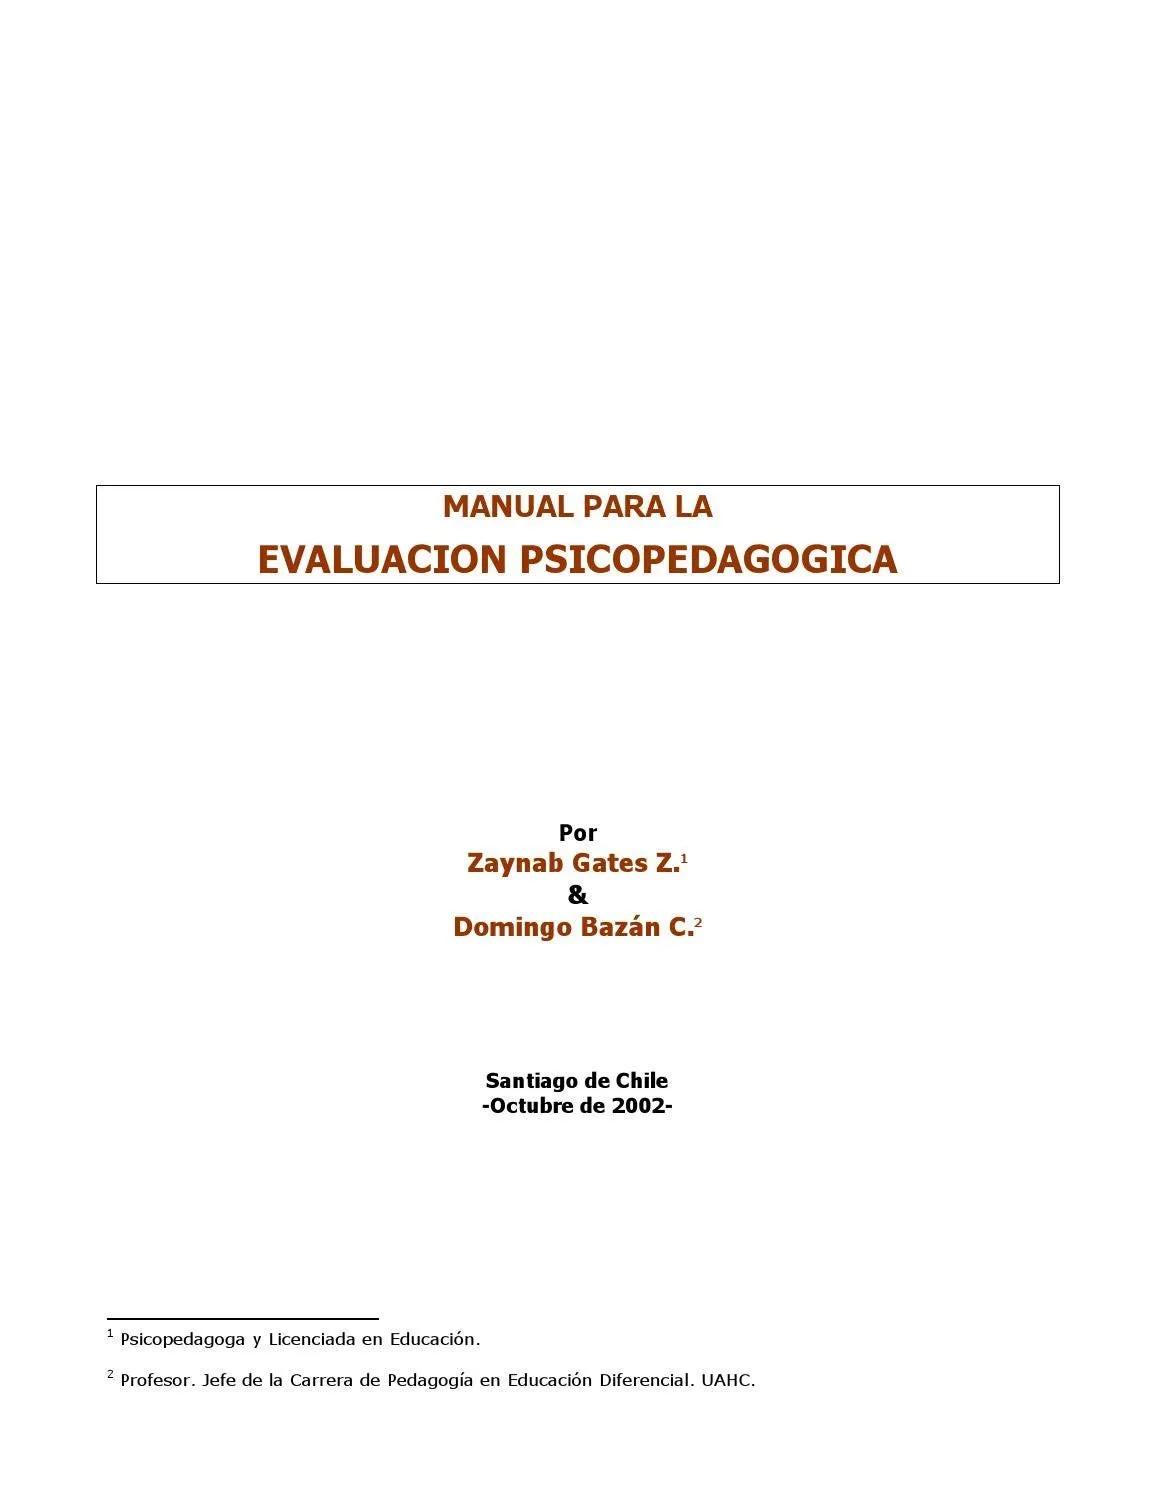 Manual de evaluación psicopedagogica by Domingo Bazán Campos - Issuu